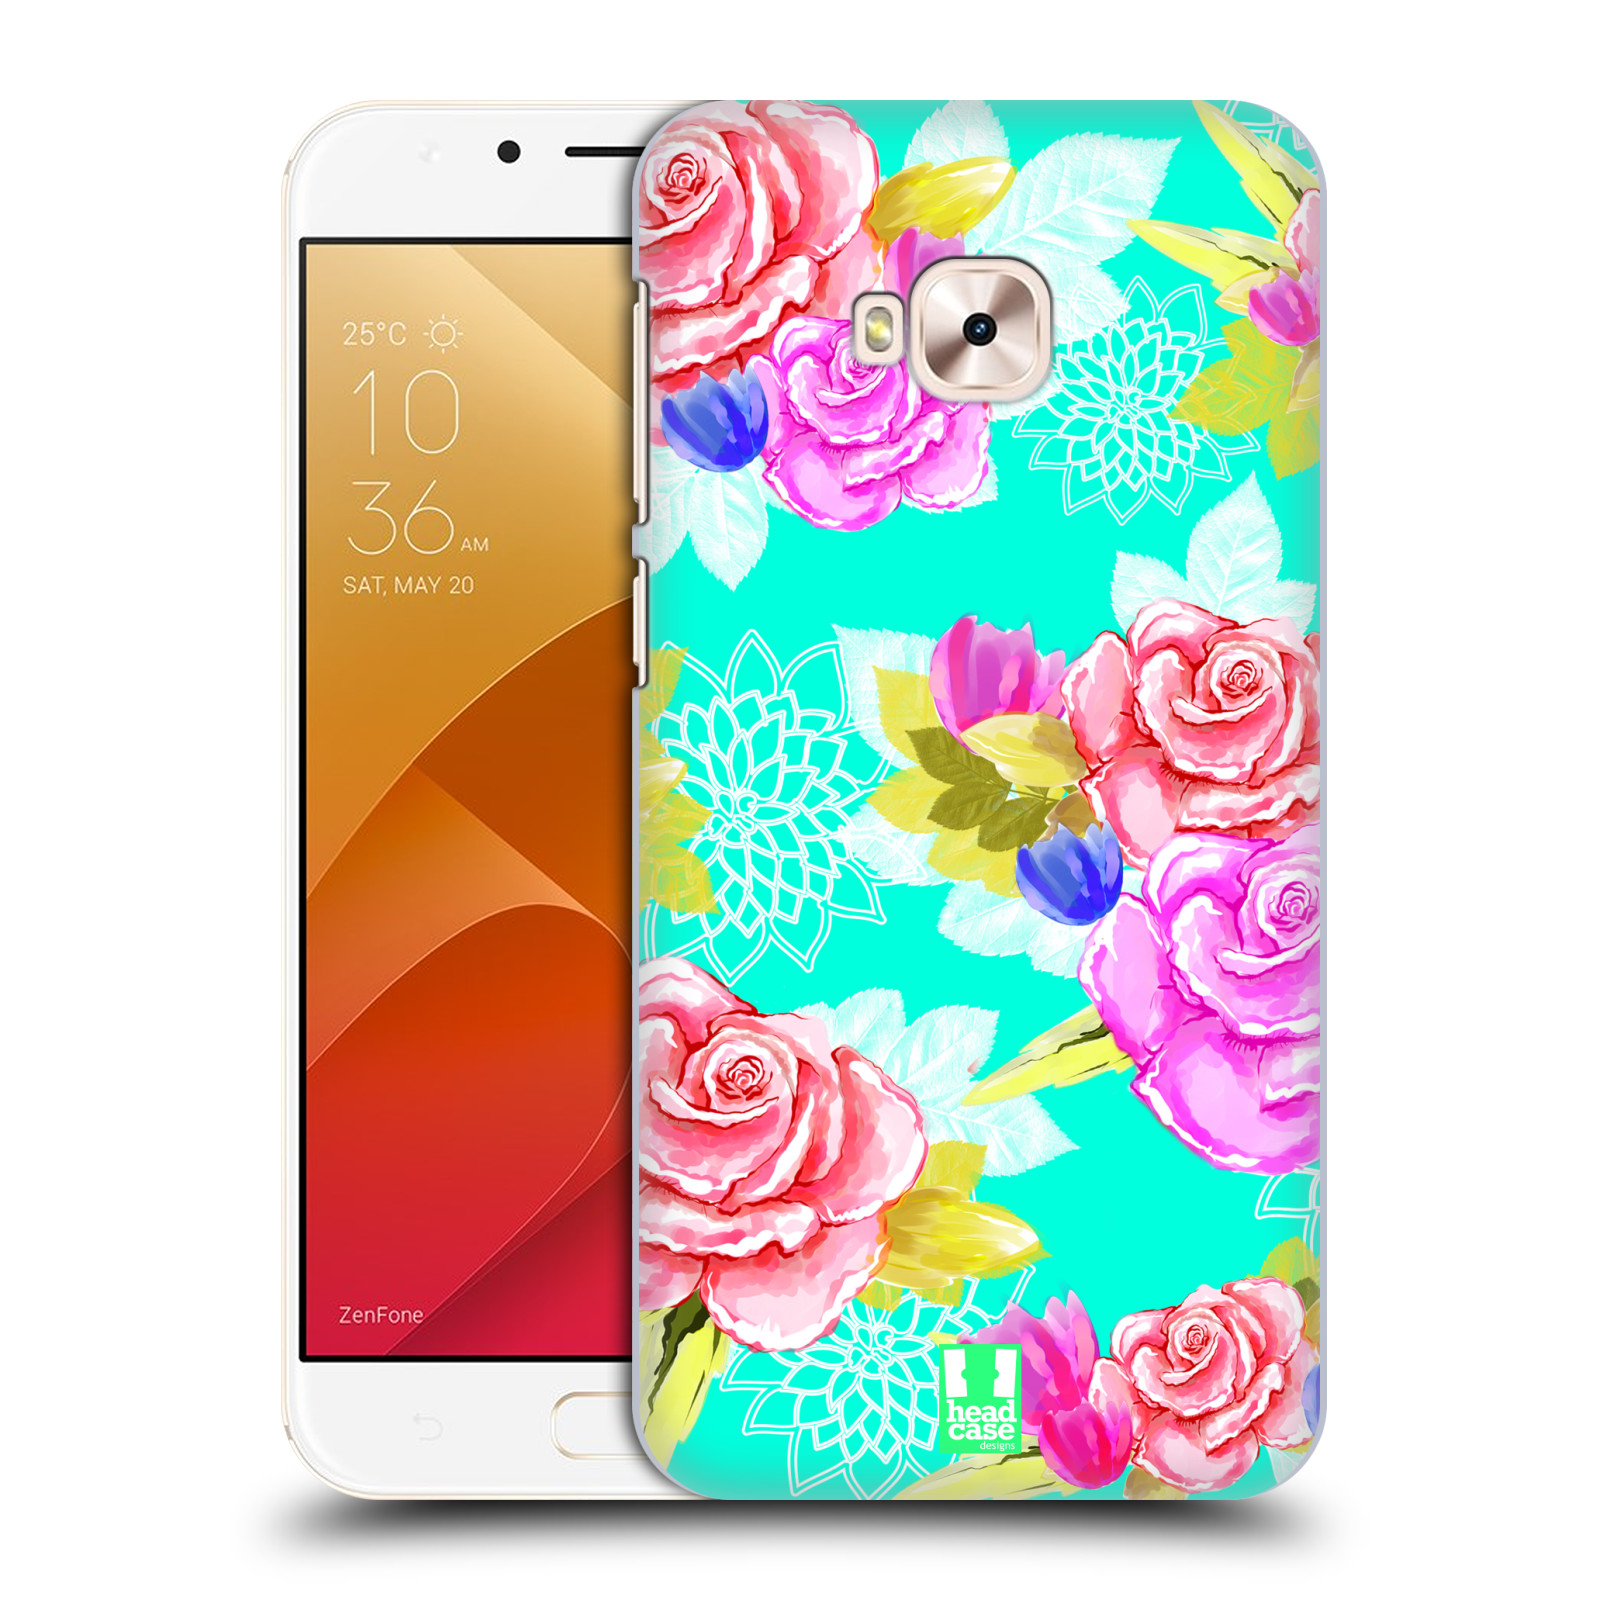 HEAD CASE plastový obal na mobil Asus Zenfone 4 Selfie Pro ZD552KL vzor Malované květiny barevné AQUA MODRÁ